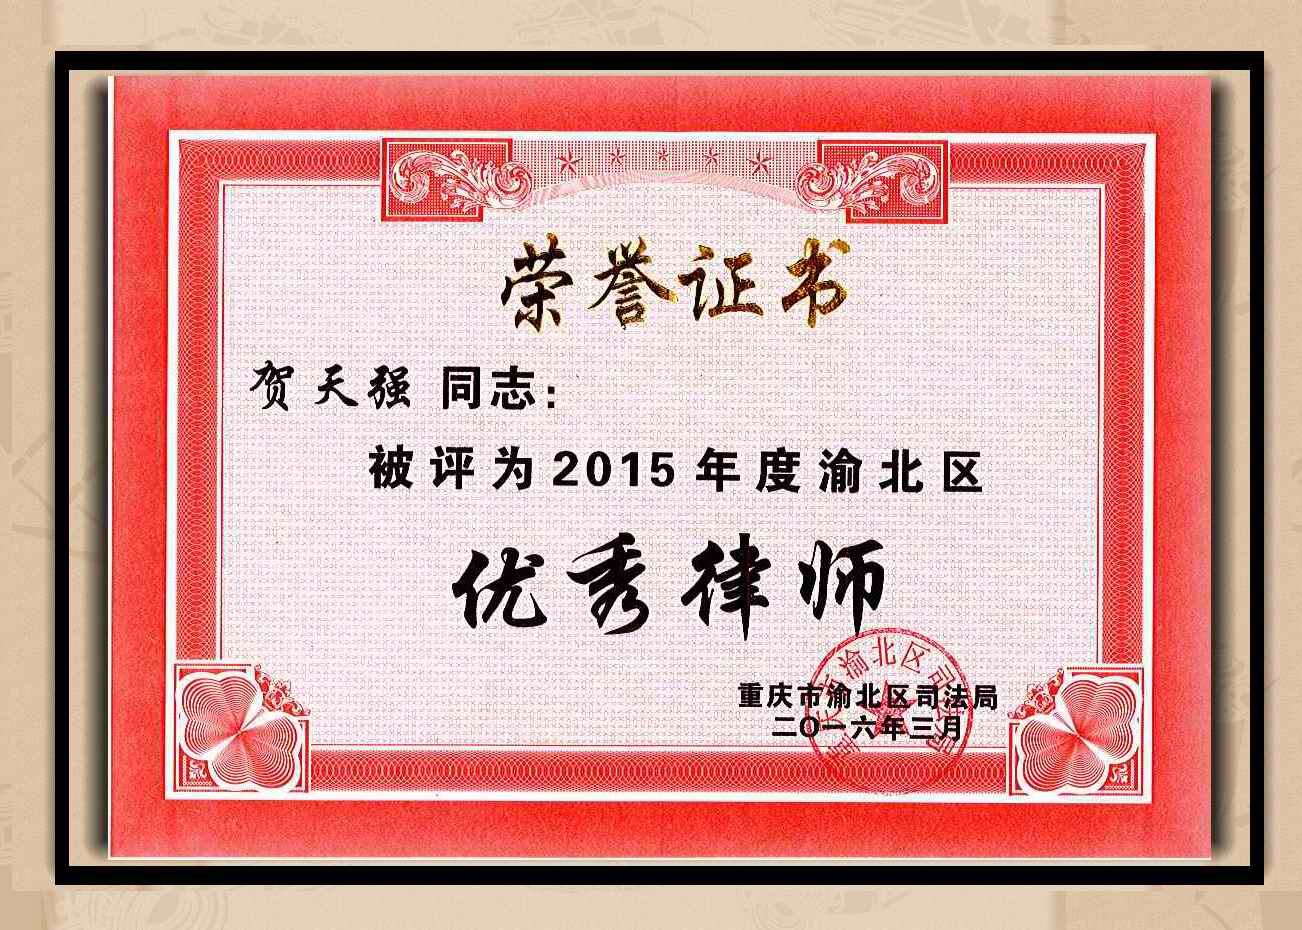 重庆森达律师事务所--贺天强主任律师被评为2015年度优秀律师